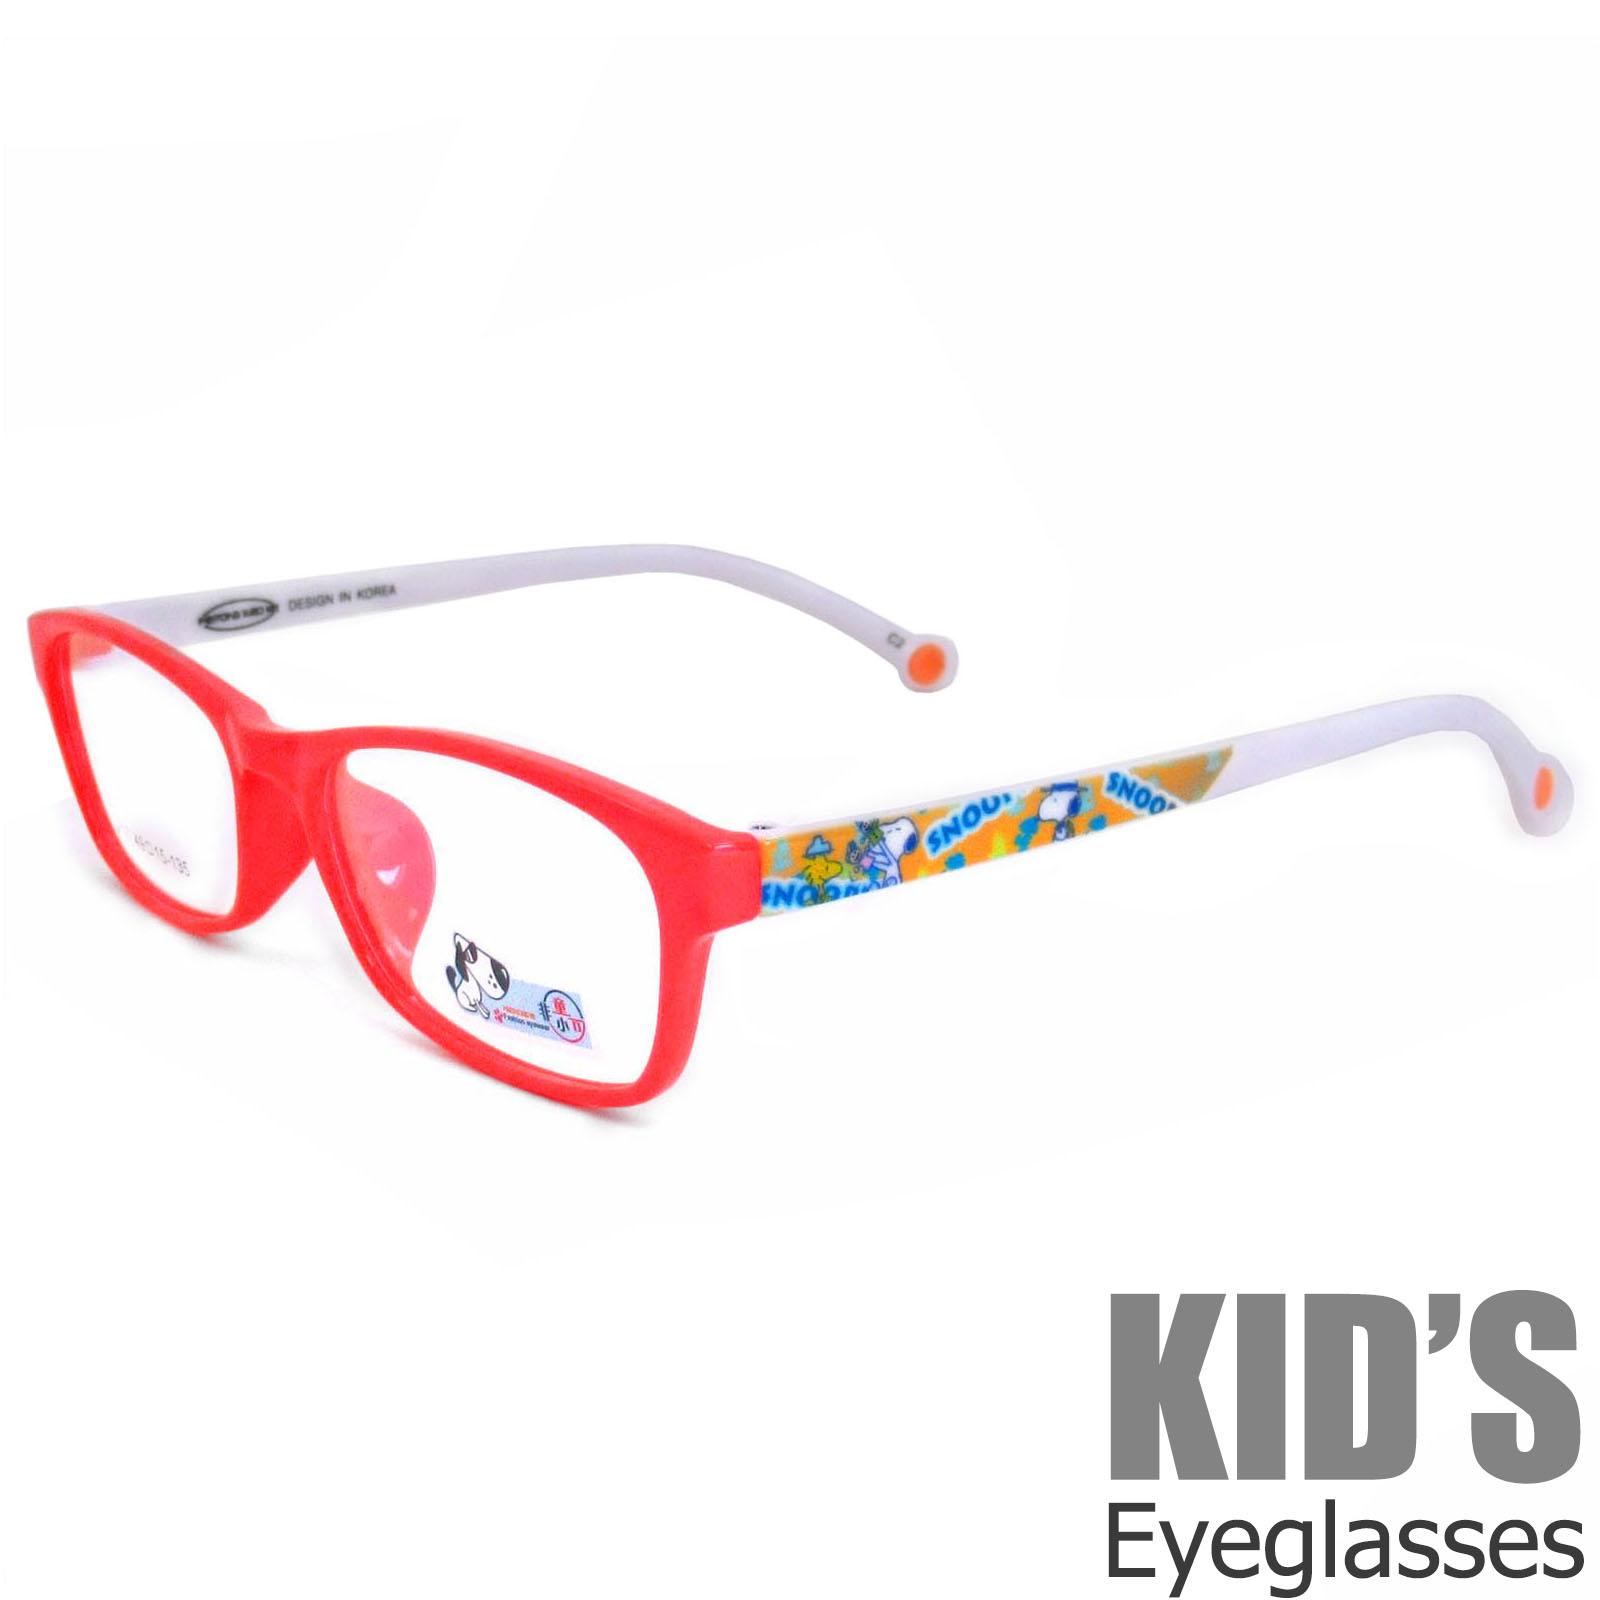 แว่นตาเกาหลีเด็ก Fashion Korea Children แว่นตาเด็ก รุ่น 217 C-2 สีแดงขาขาว กรอบแว่นตาเด็ก Rectangle ทรงสี่เหลี่ยมผืนผ้า Eyeglass baby frame ( สำหรับตัดเลนส์ ) วัสดุ PC เบา ขาข้อต่อ Kid leg joints Plastic Grade A material Eyewear Top Glasses